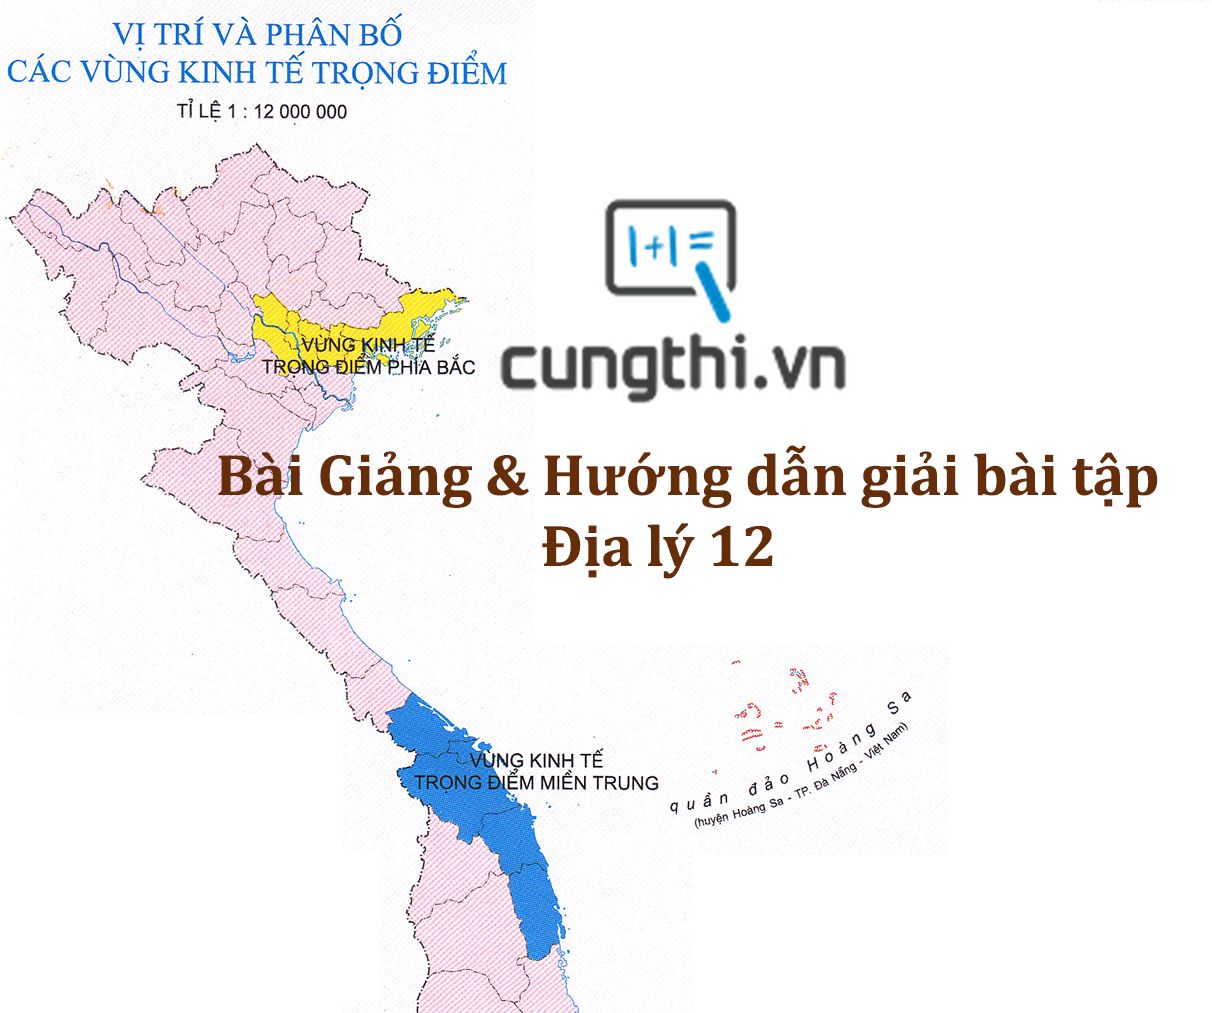 Bài giảng và hướng dẫn giải bài tập bài 1. Việt Nam trên đường đổi mới và hội nhập